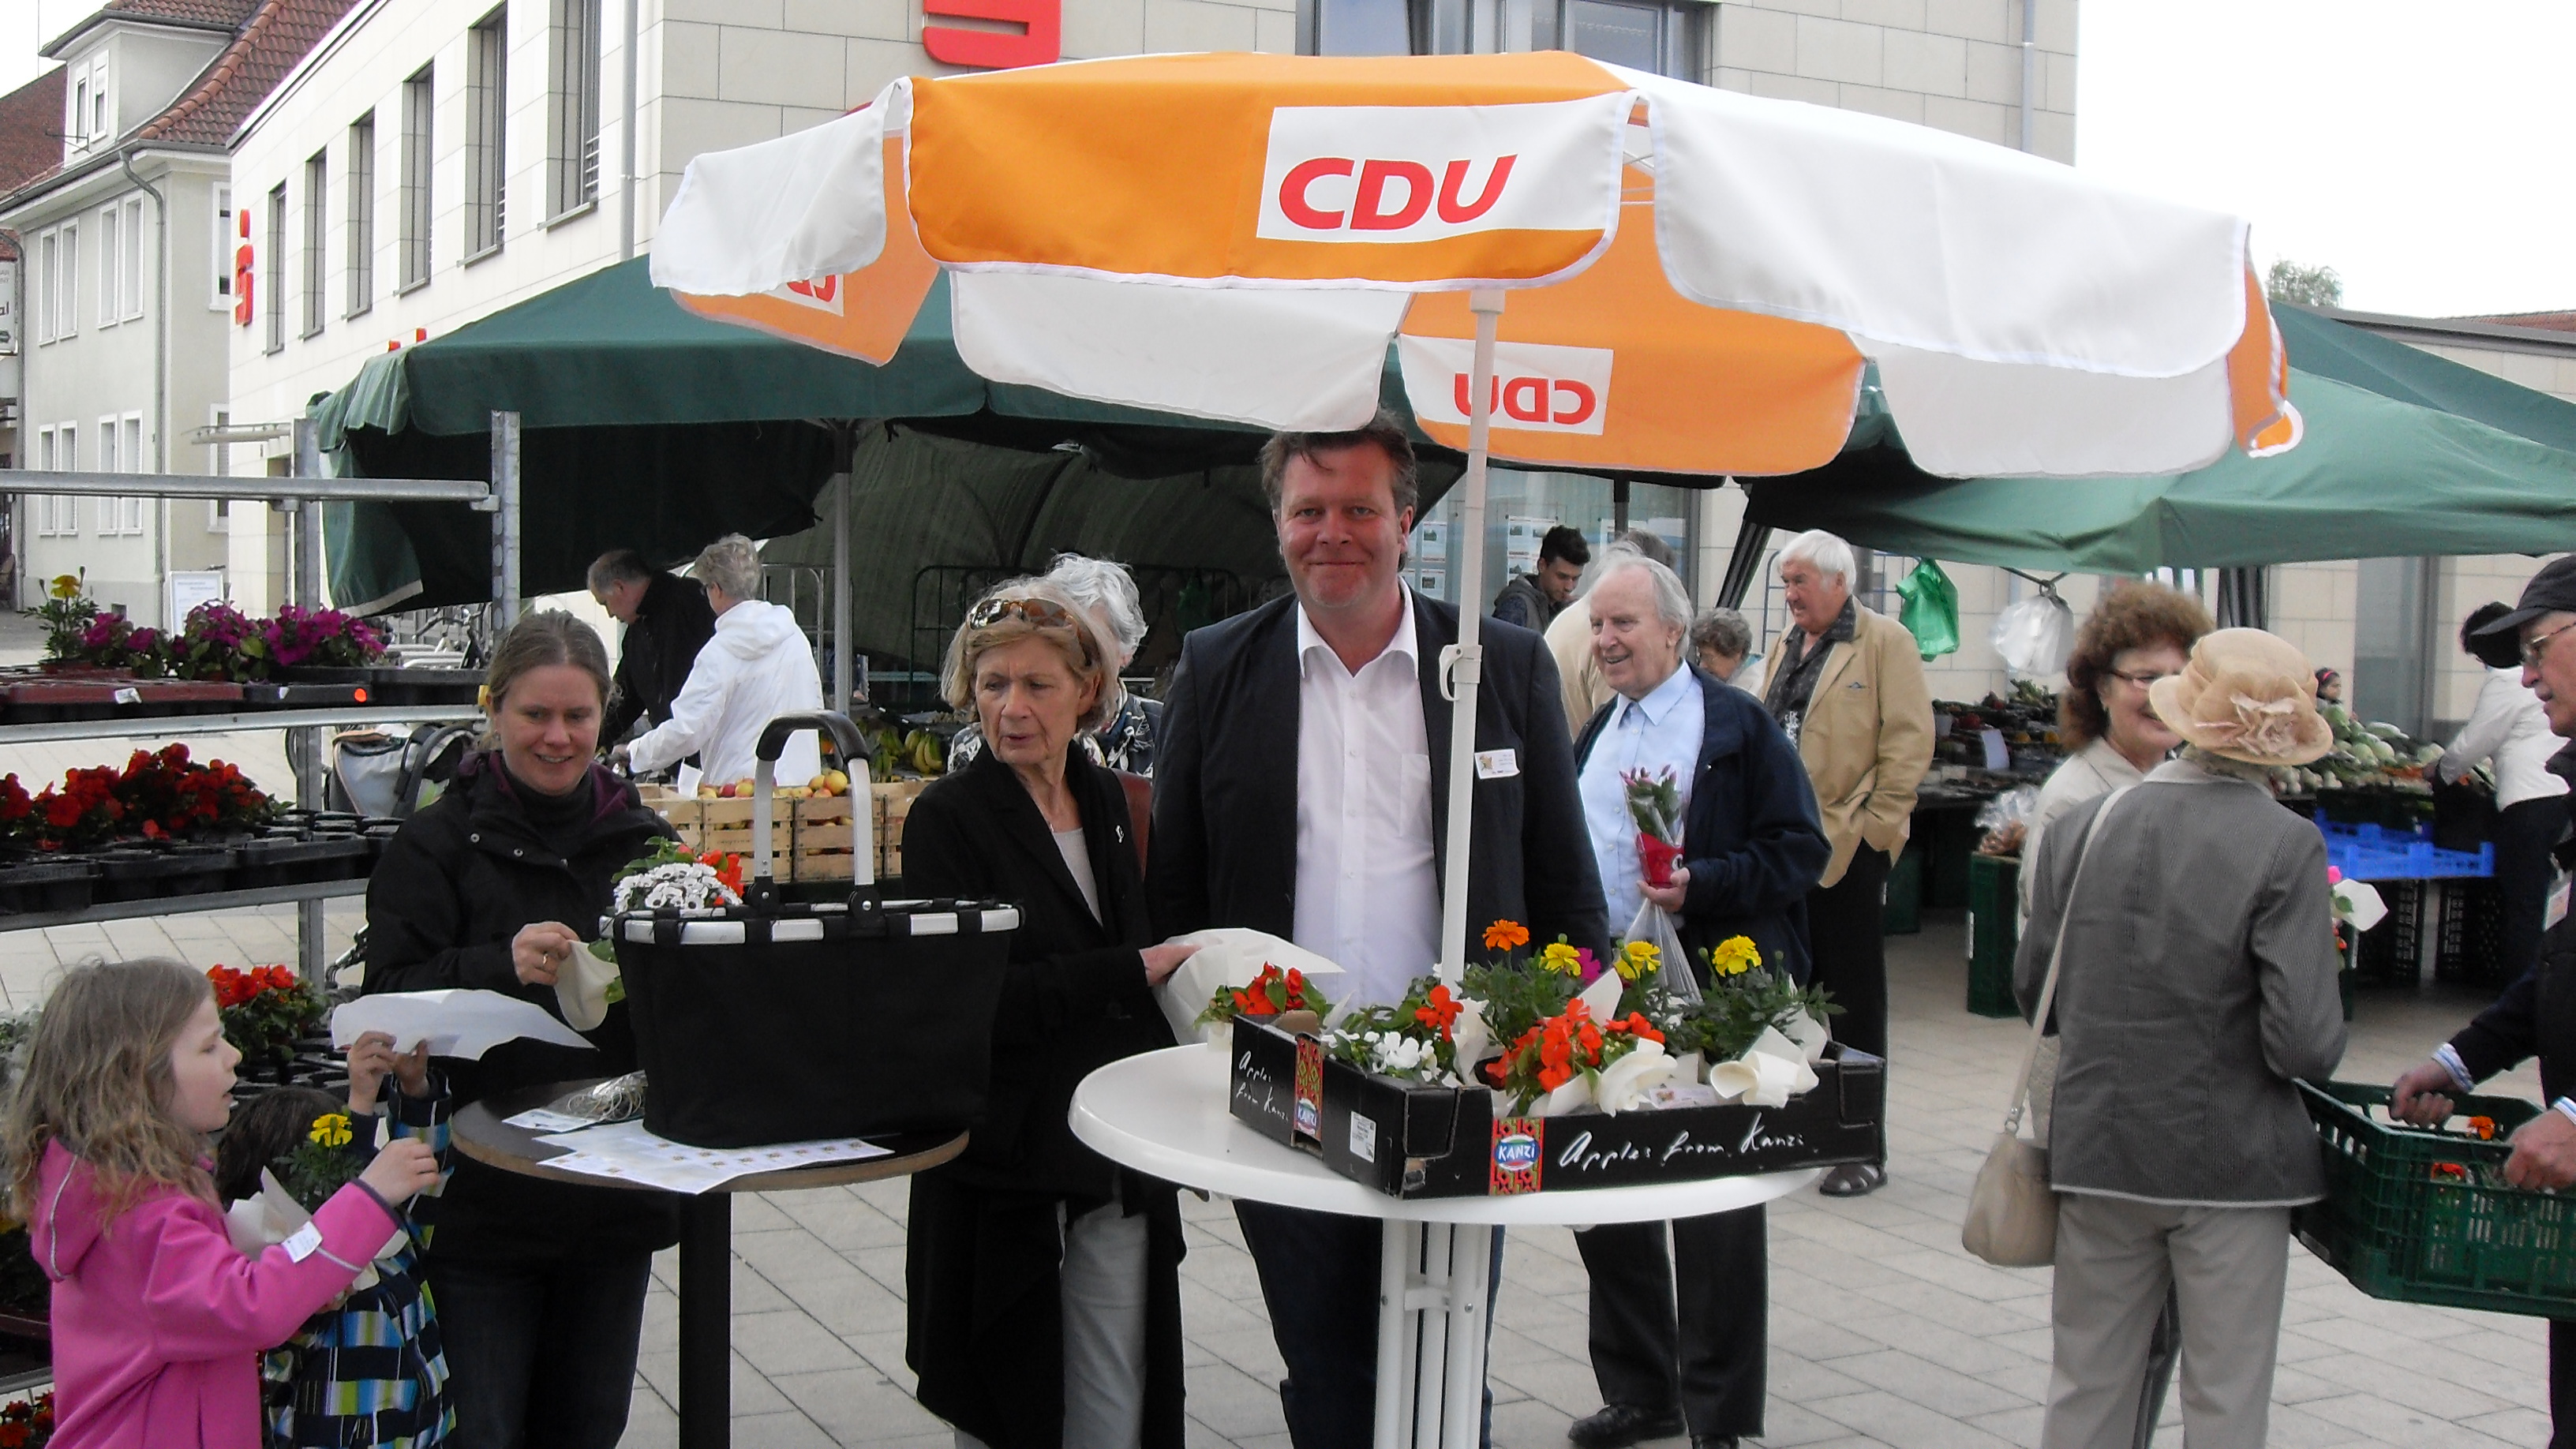 Vorstands- und Ratsmitglieder der Neubeckumer CDU verteilten Muttertagsgrüße auf dem Neubeckumer Wochenmarkt